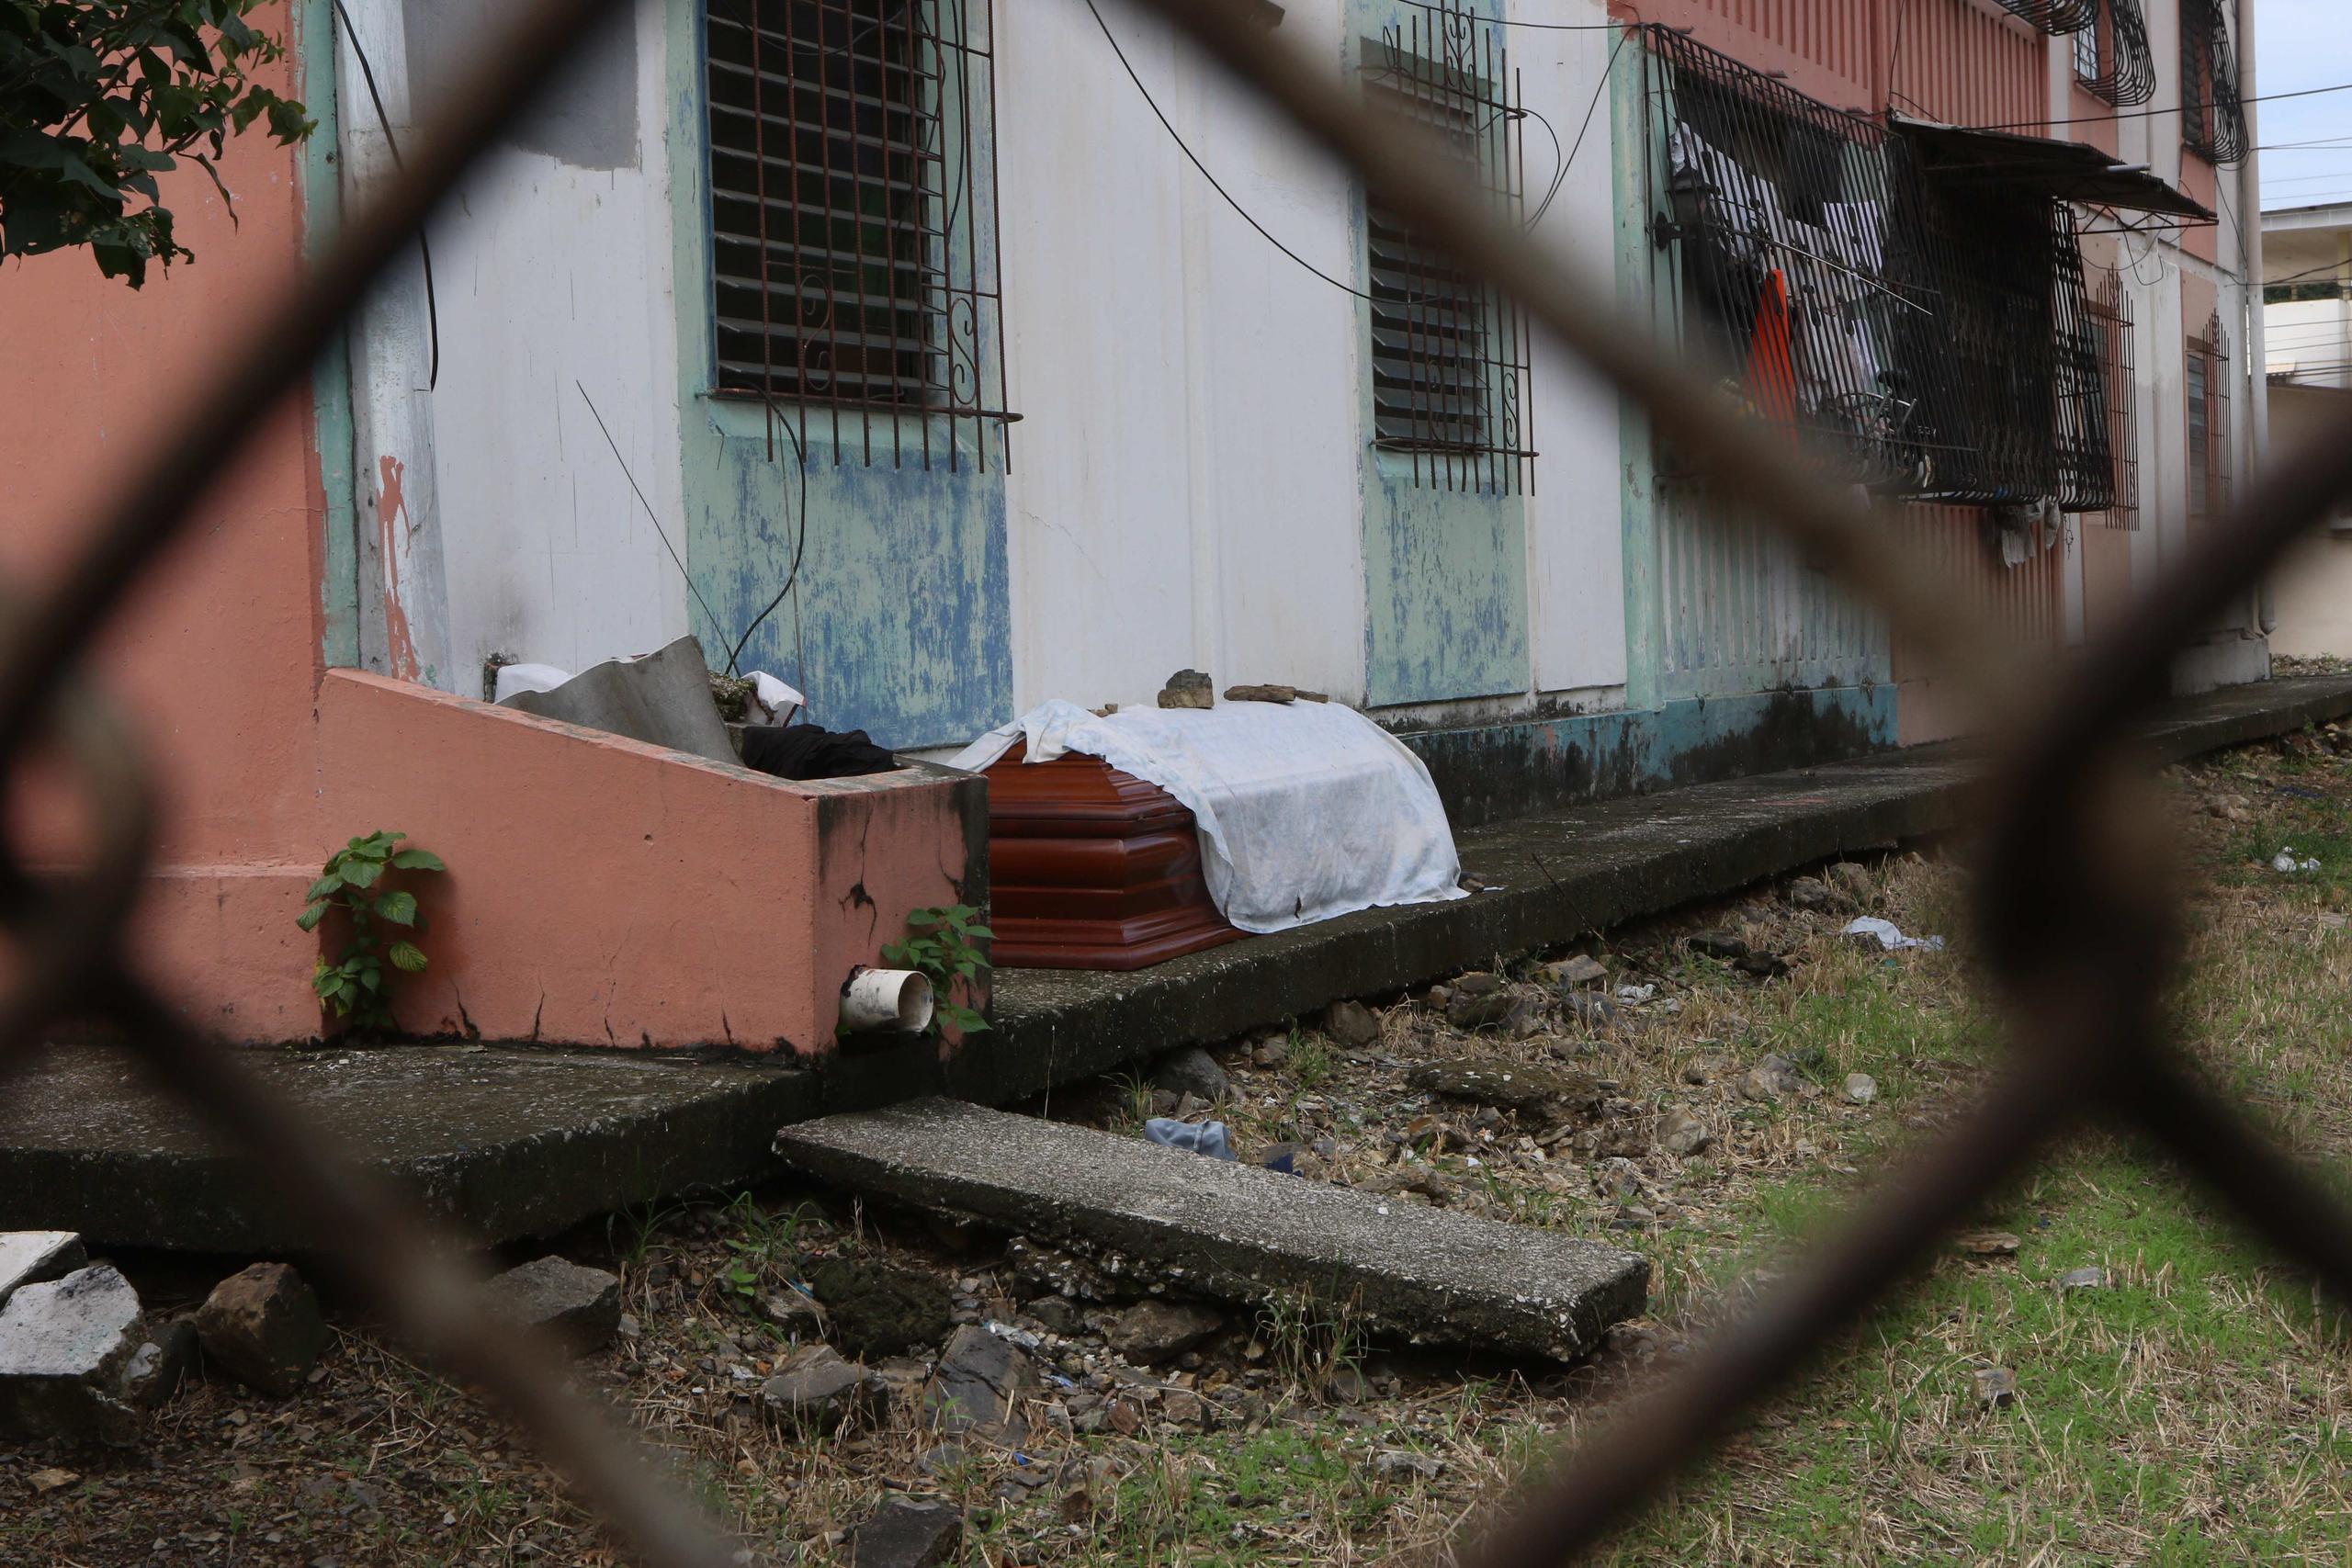 Fotografía cedida por el Diario Expreso que muestra un féretro con un fallecido que deberá ser recogido por las autoridades para ser enterrado, este miércoles en Guayaquil, Ecuador.